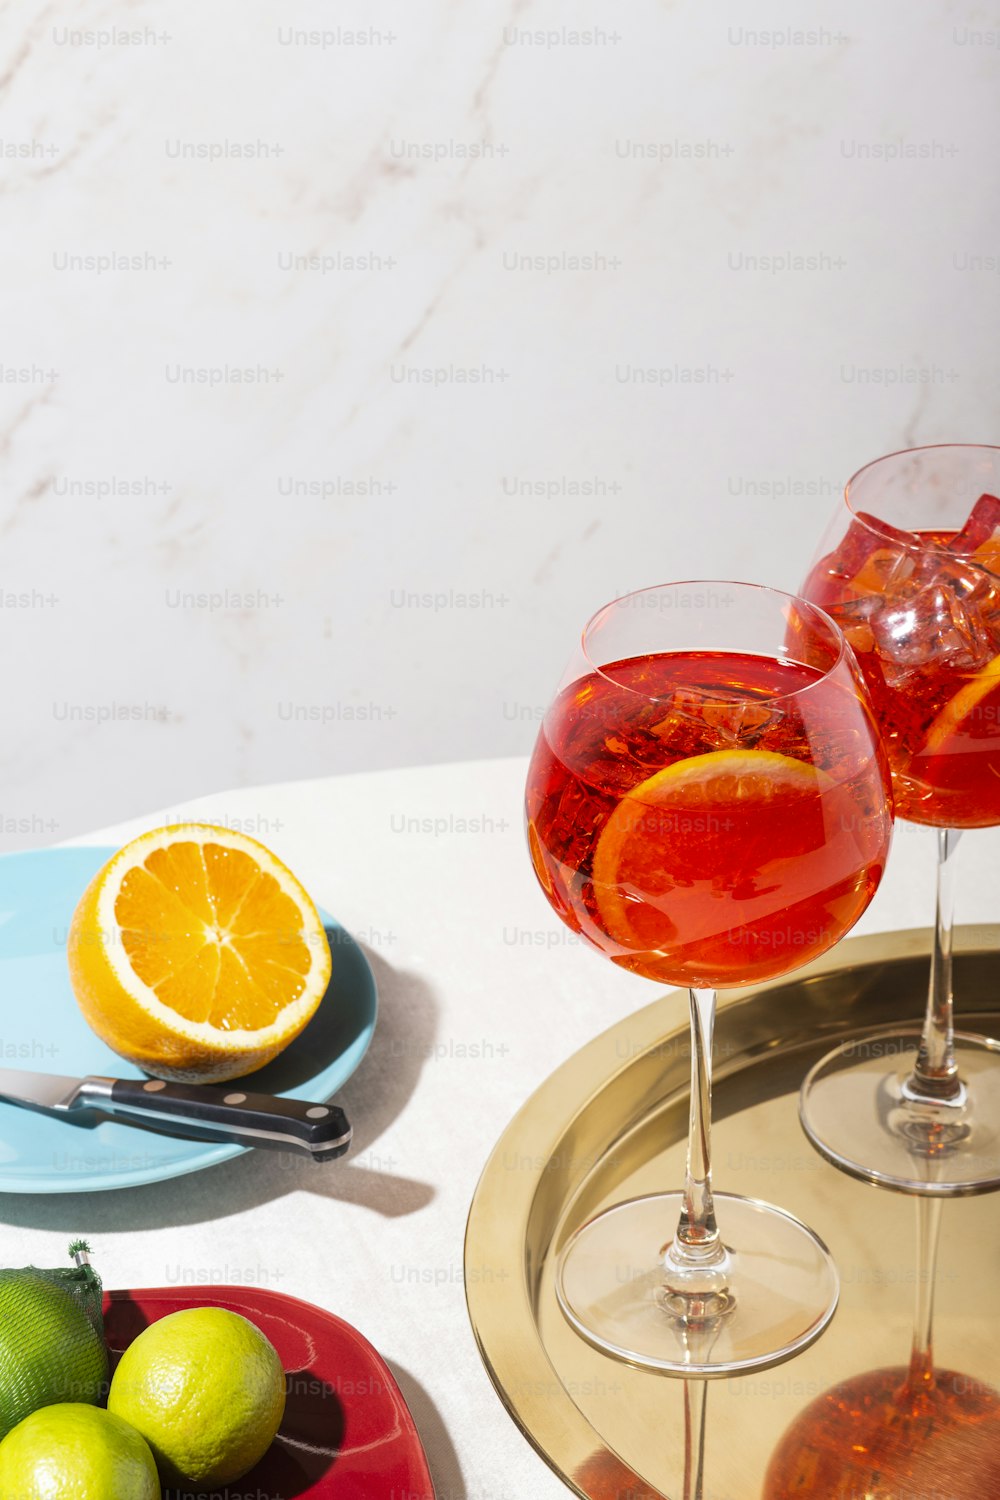 Spritz veneziano, um coquetel IBA com Prosecco ou vinho espumante branco, amargo, refrigerante, gelo e uma fatia de laranja, em um calix sobre uma mesa, estilo gráfico pop